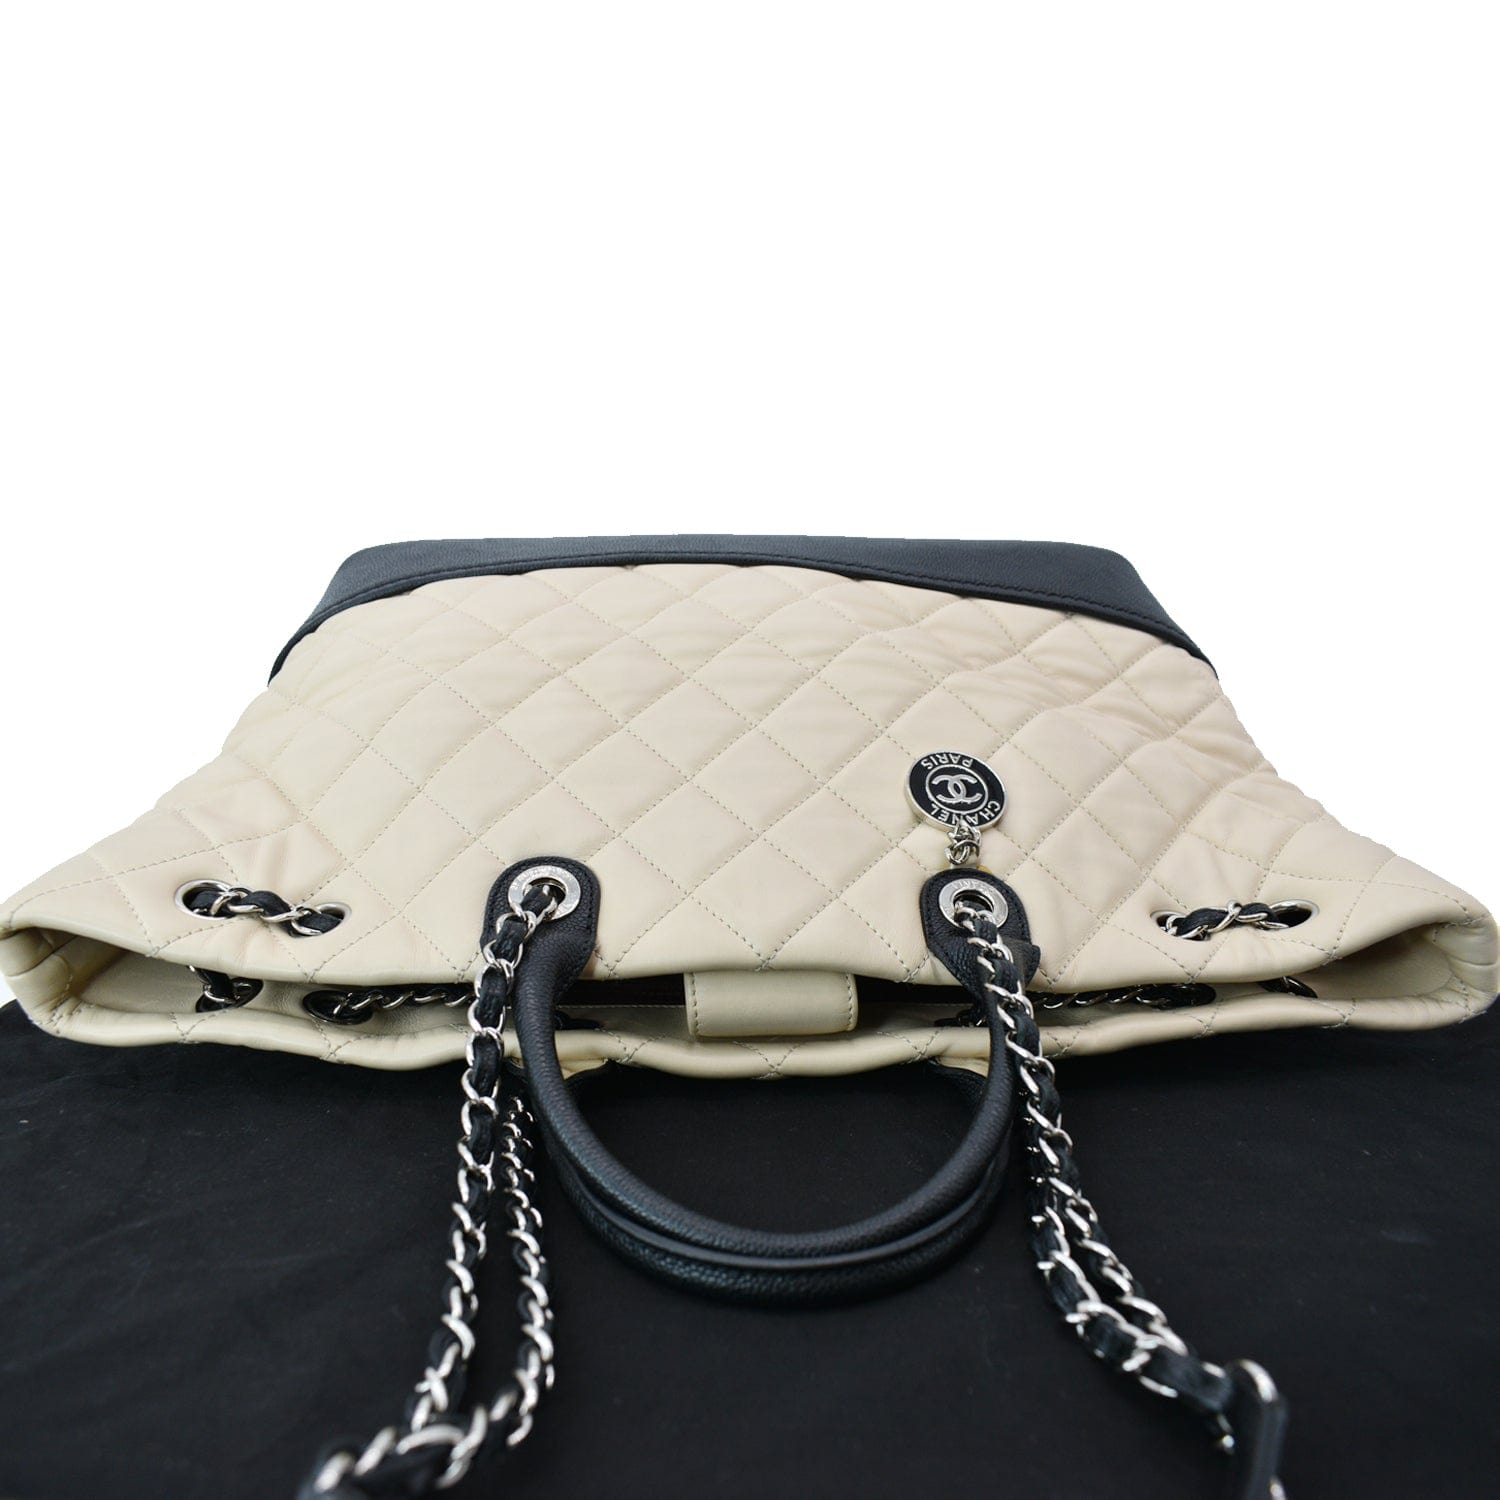 Chanel Beige Drawstring Backpack